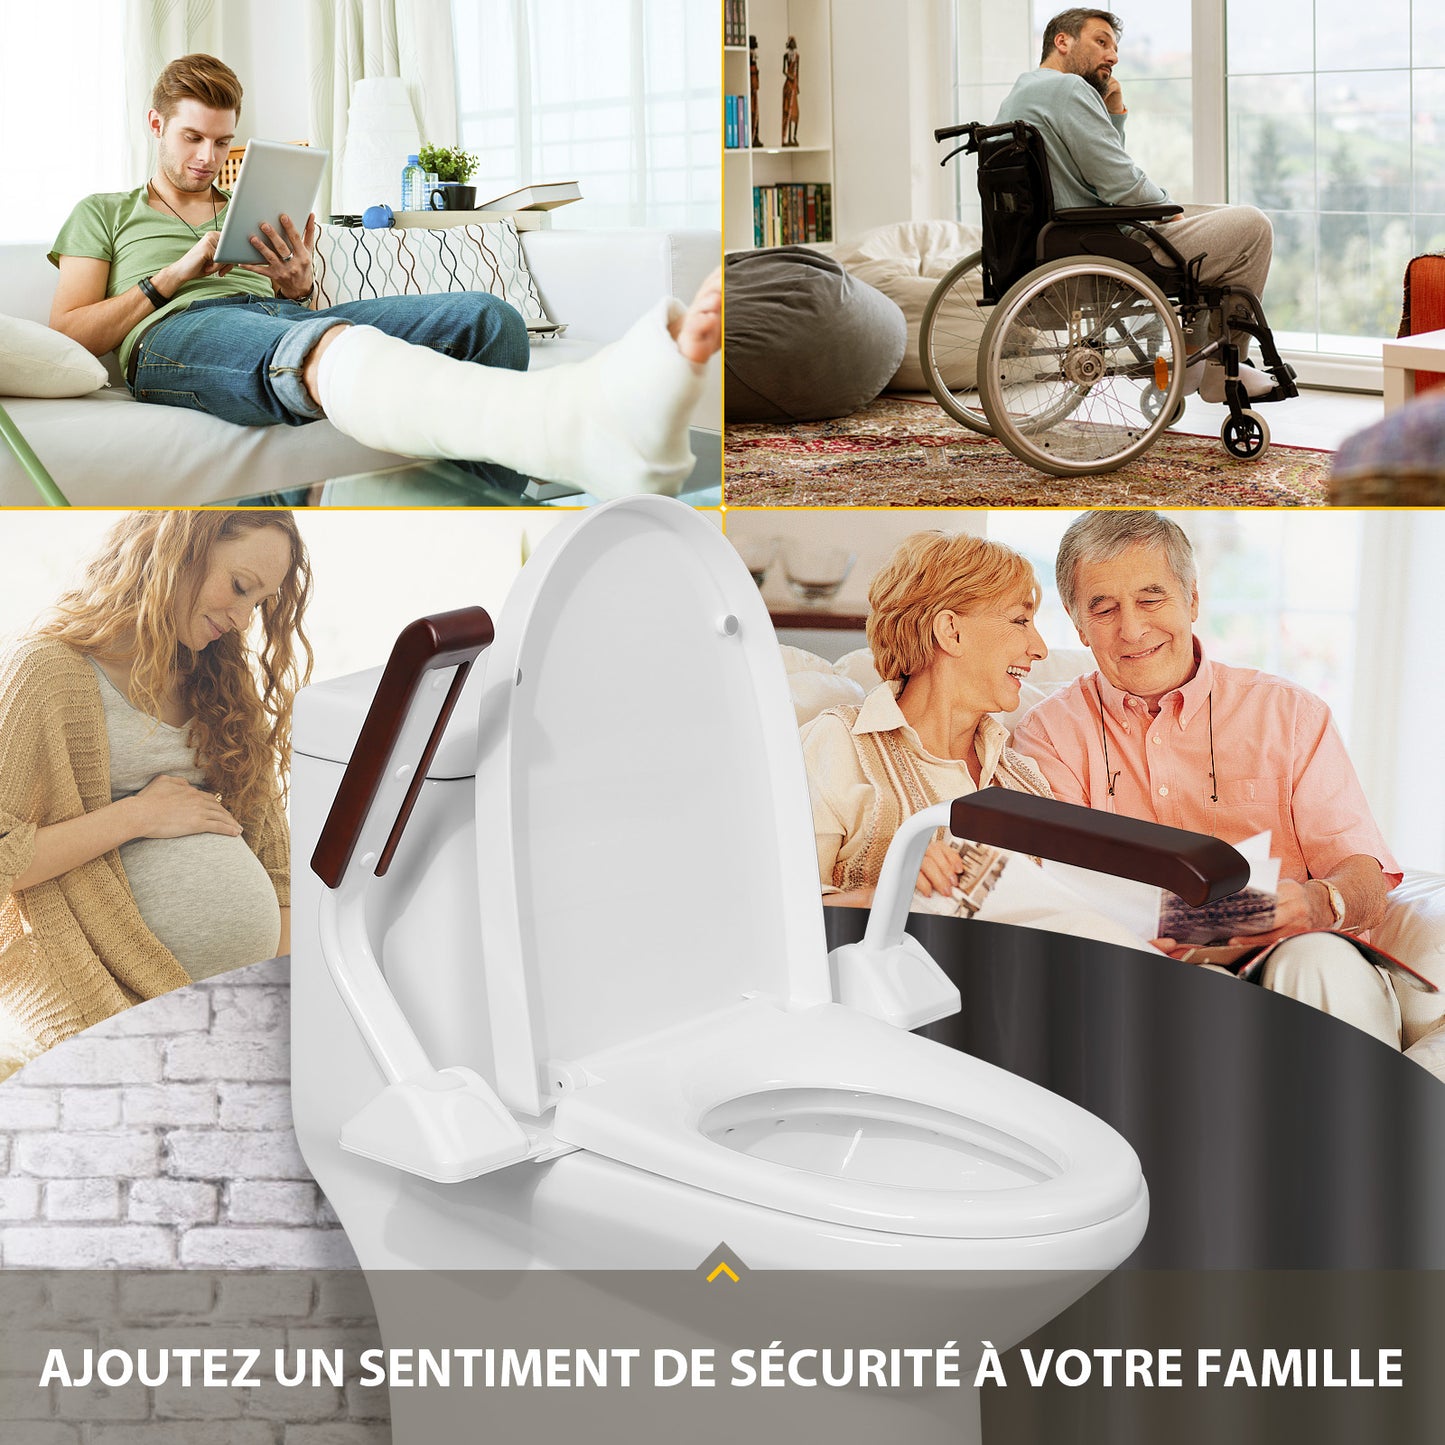 Barres d'appui de sécurité pour toilettes pour personnes âgées, siège de toilette réglable et robuste avec poignées au-dessus des toilettes, produits pliables d'assistance aux personnes âgées handicapées